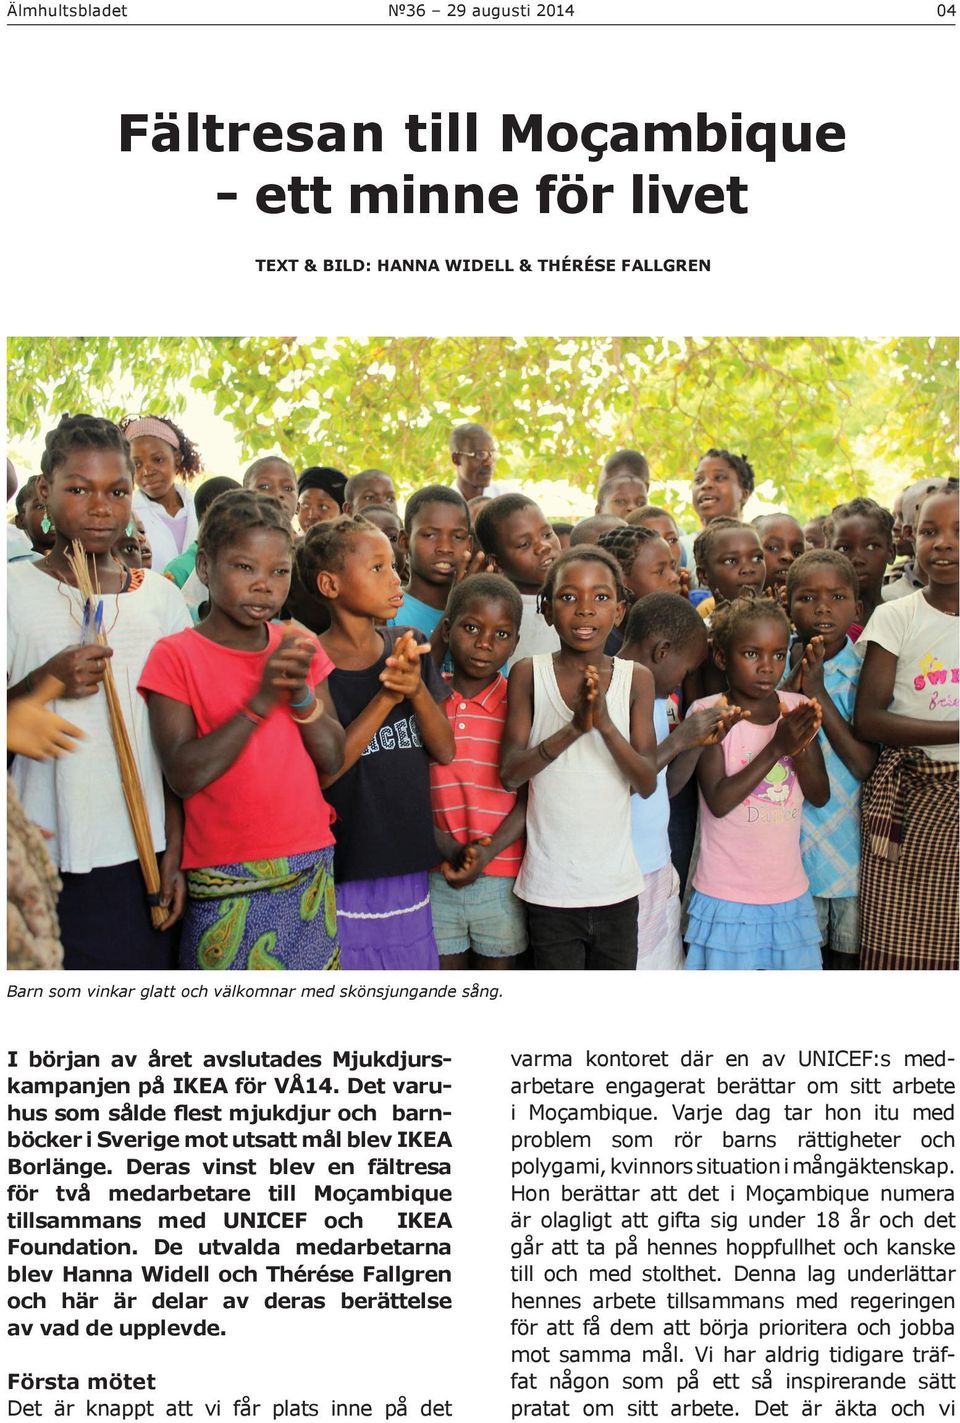 Deras vinst blev en fältresa för två medarbetare till Moçambique tillsammans med UNICEF och IKEA Foundation.